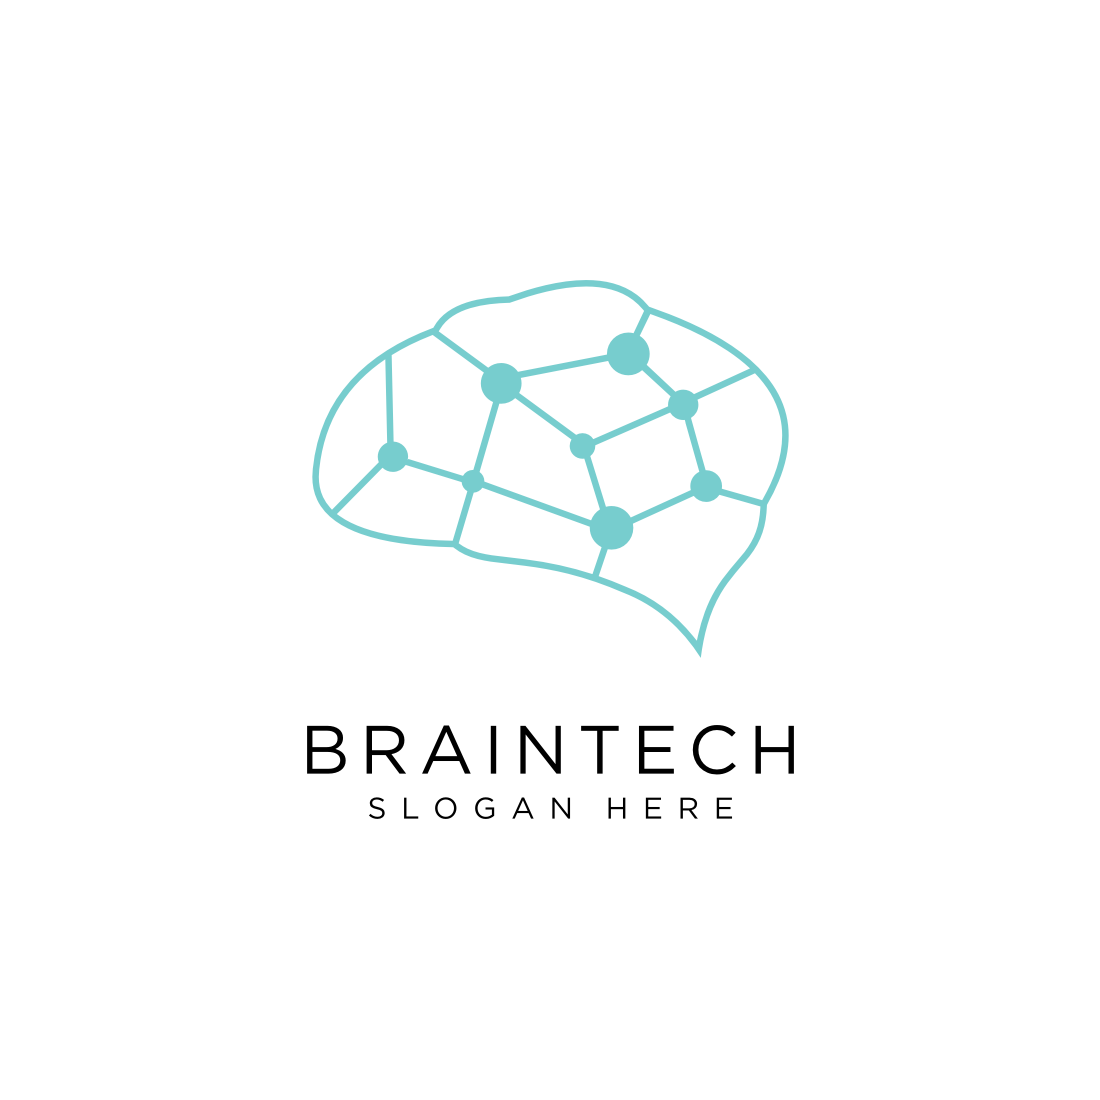 brain tech logo design vector cover image.